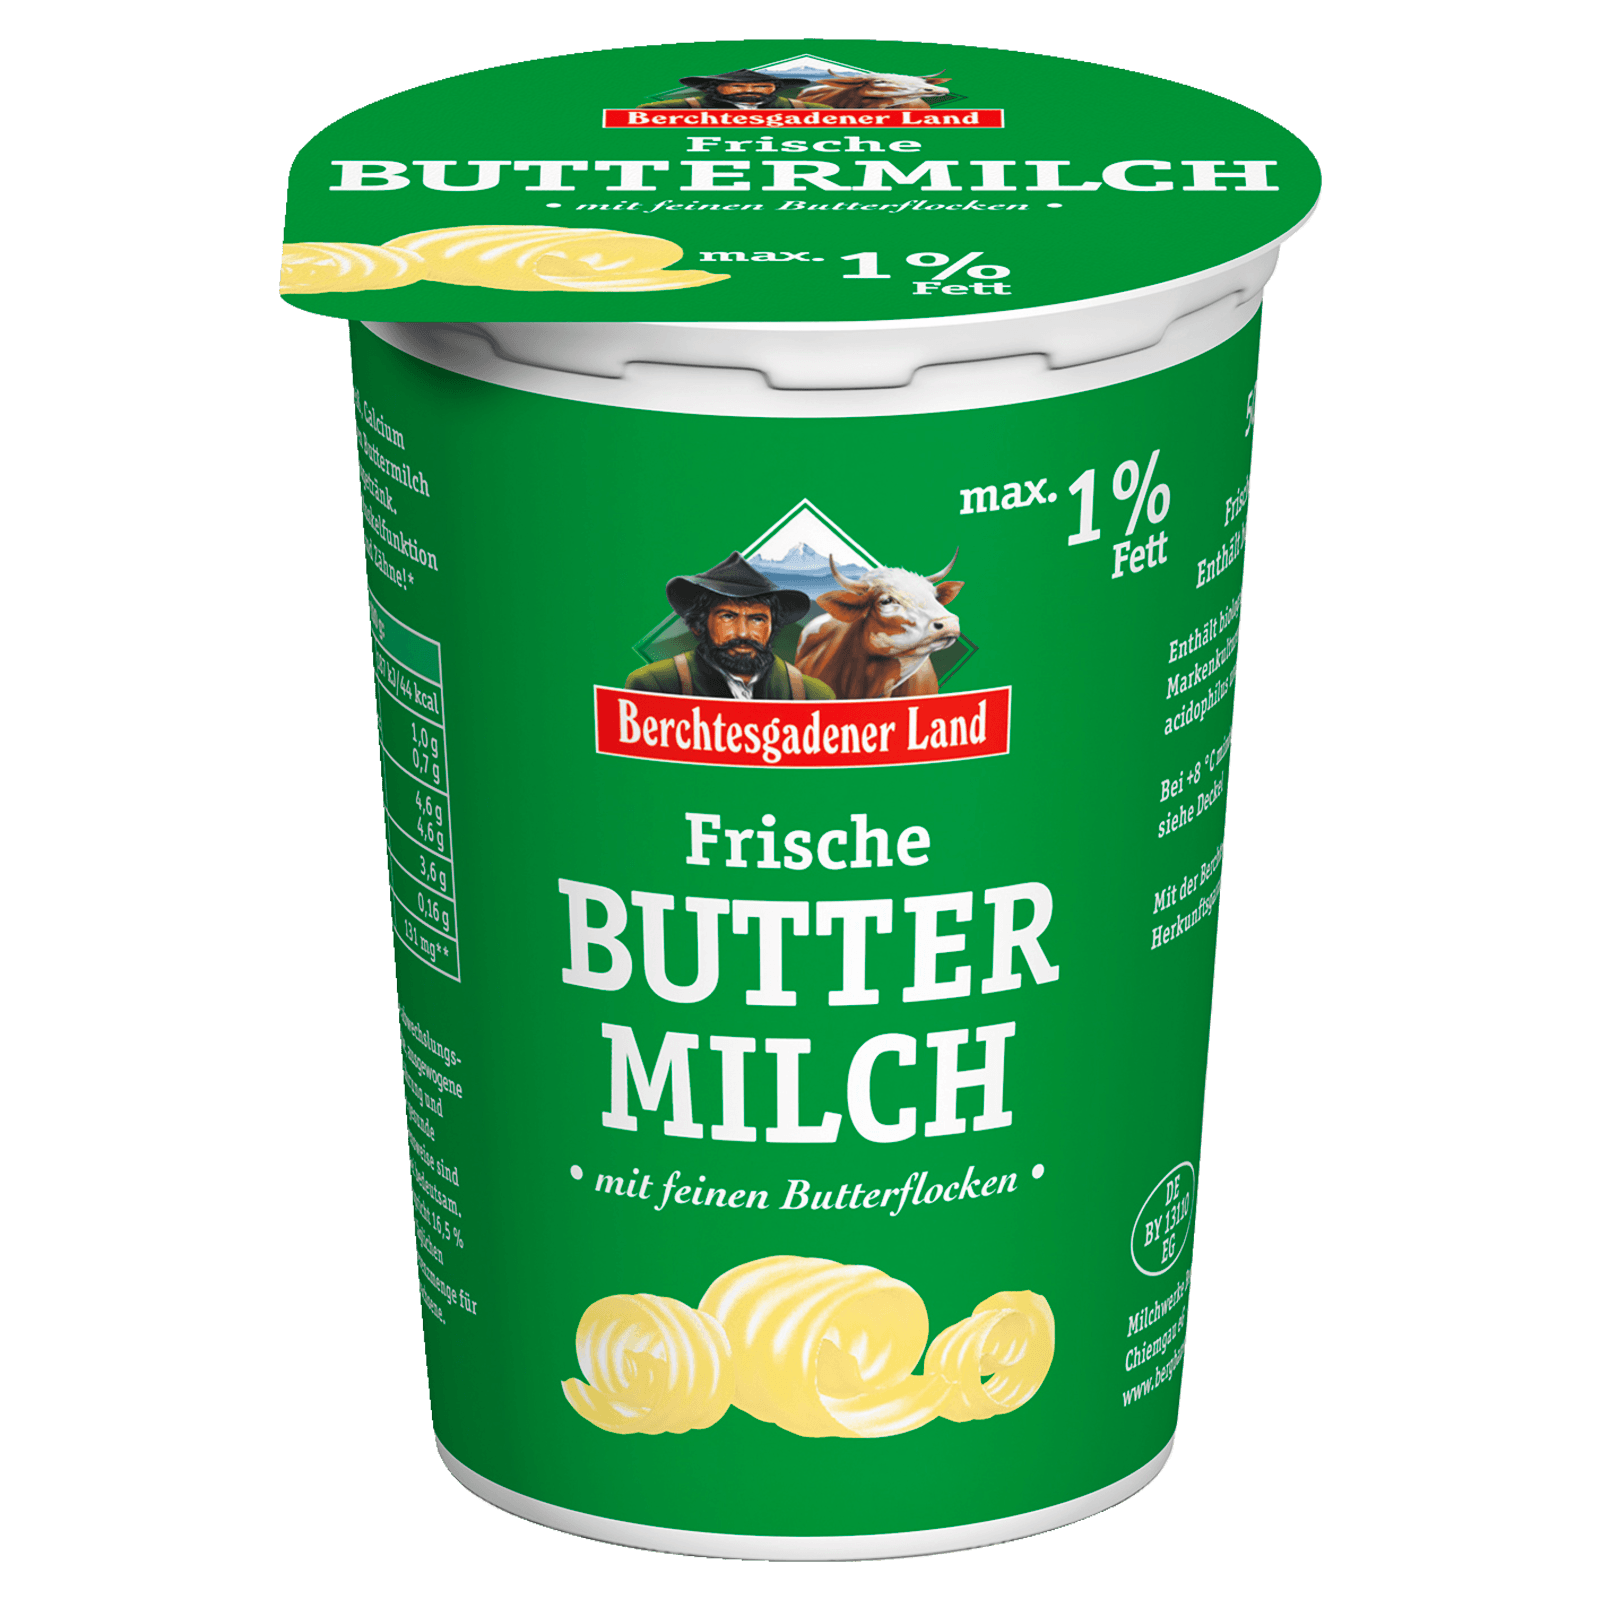 Berchtesgadener Land Buttermilch mit Butterflocken 500g  für 0.89 EUR